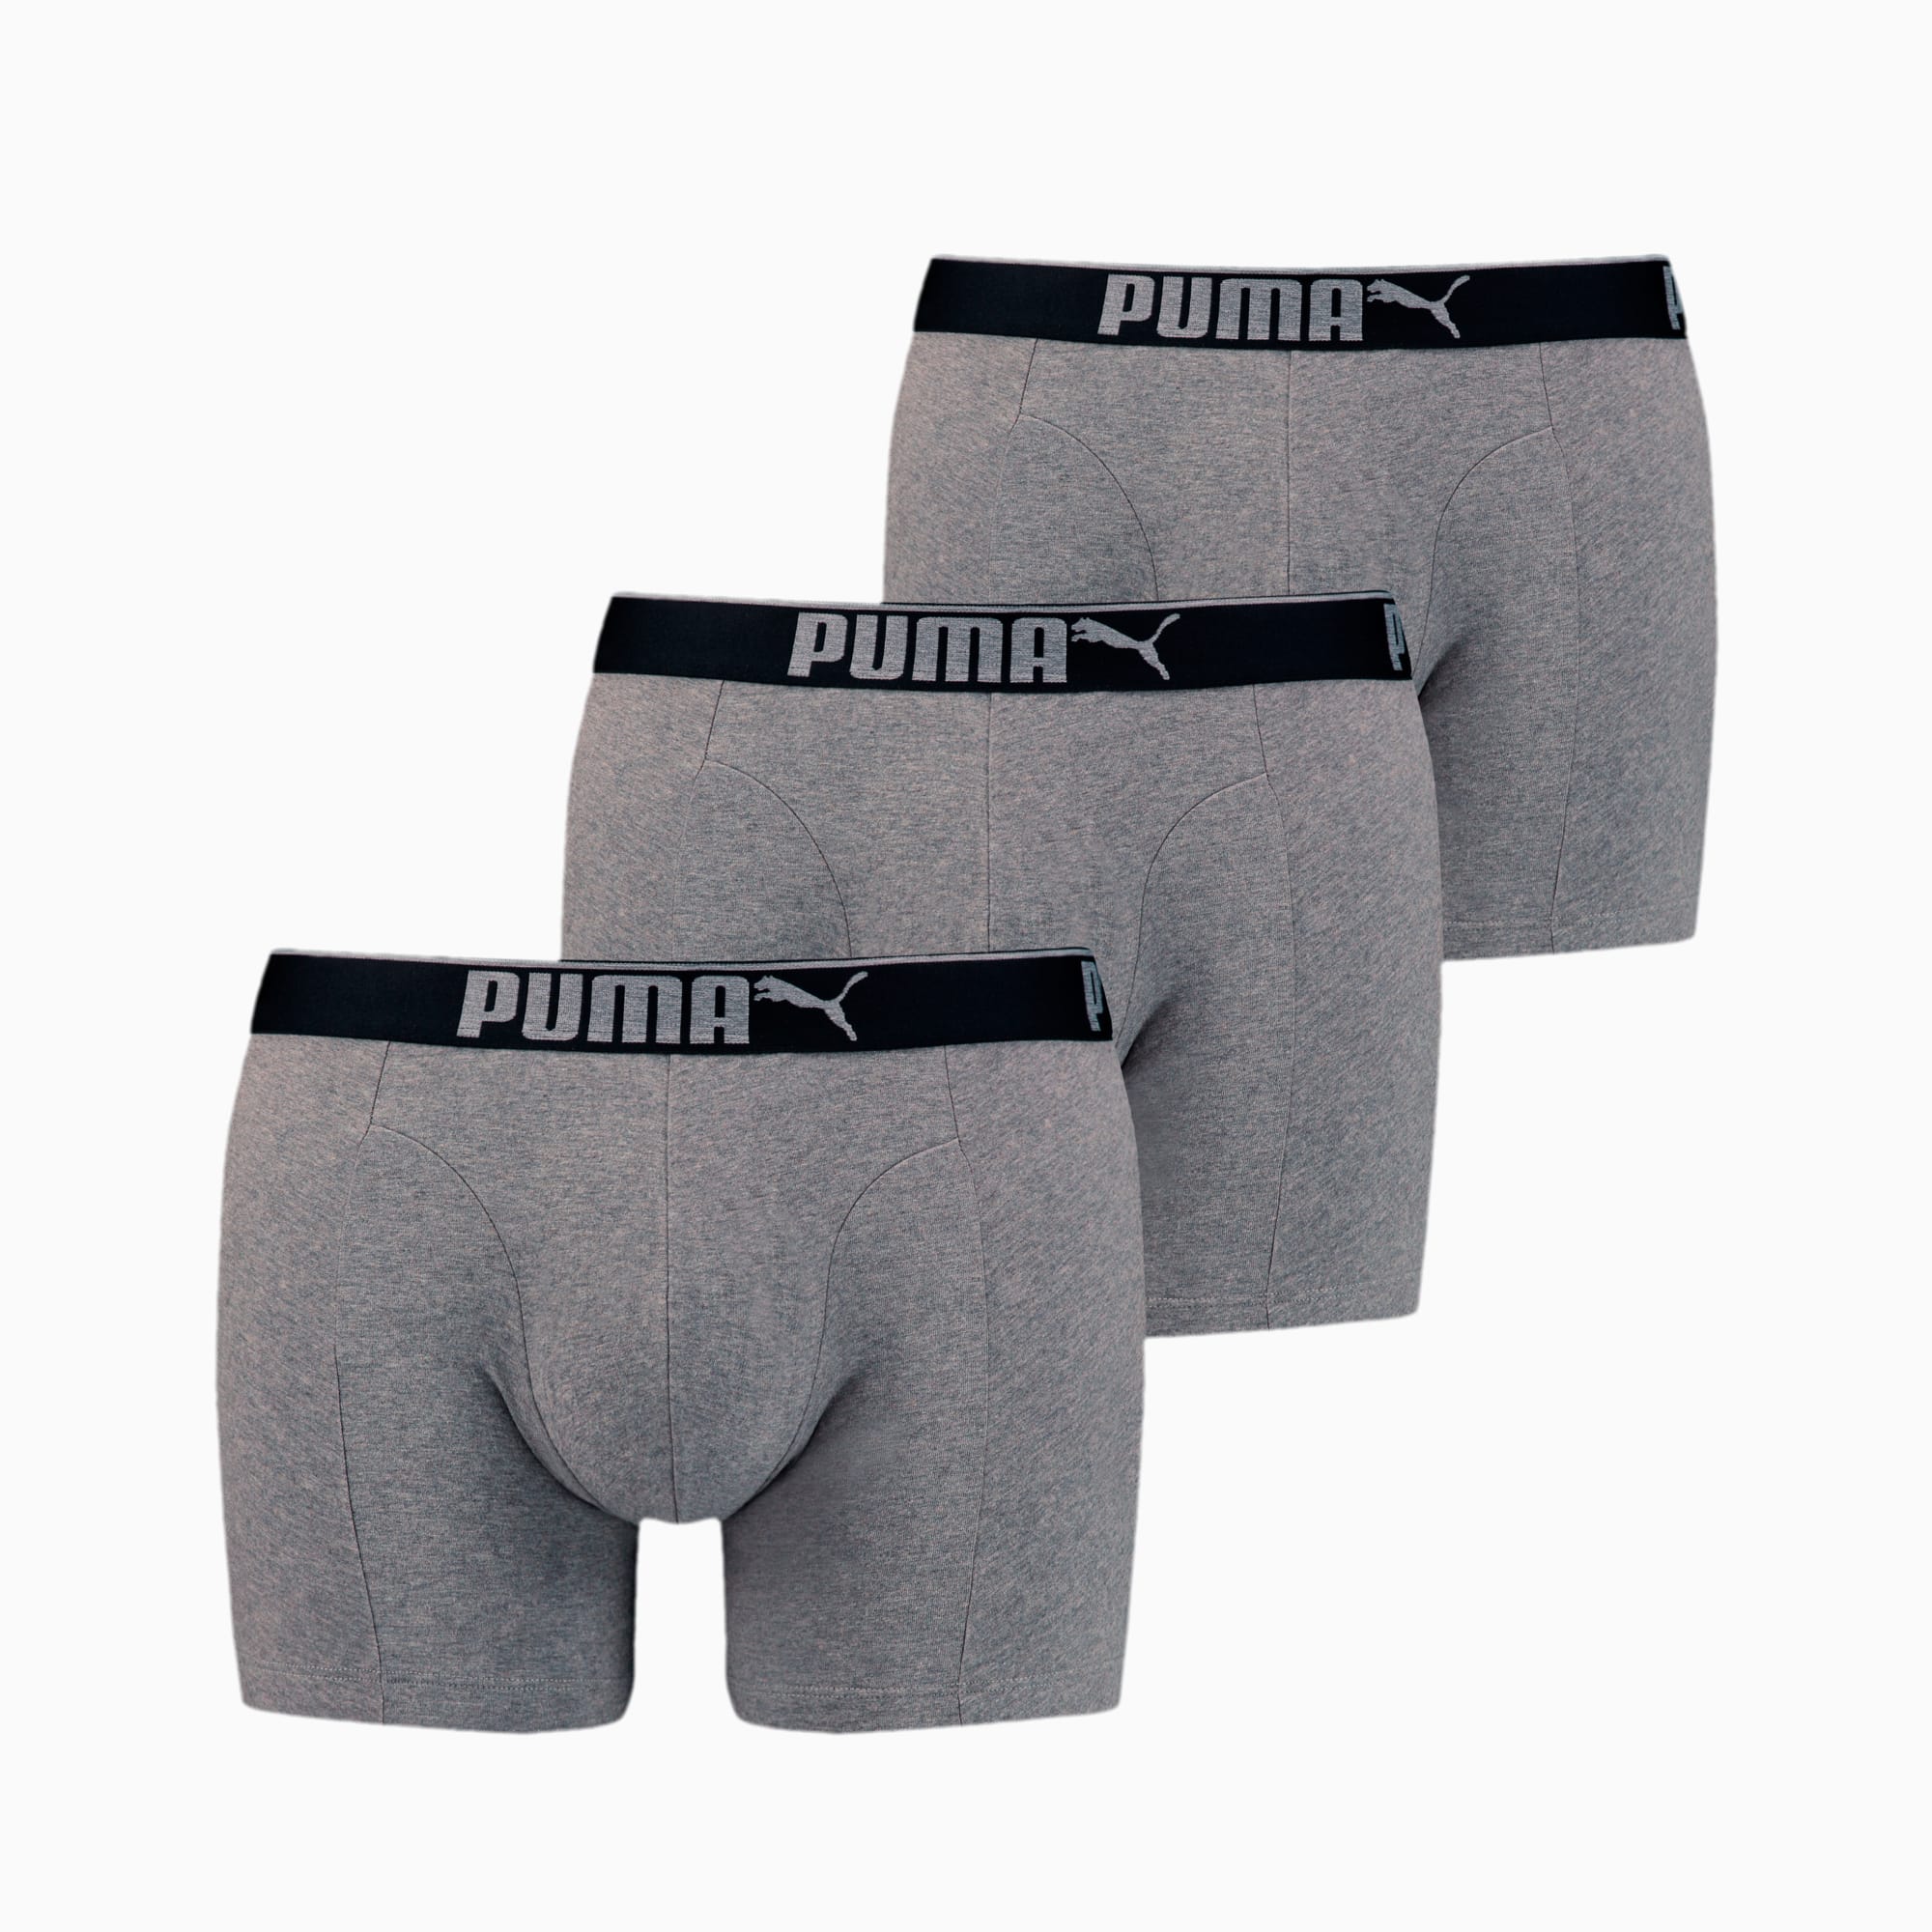 PUMA Premium katoensuède boxers 3-pak, Grijs/Melange, Maat L